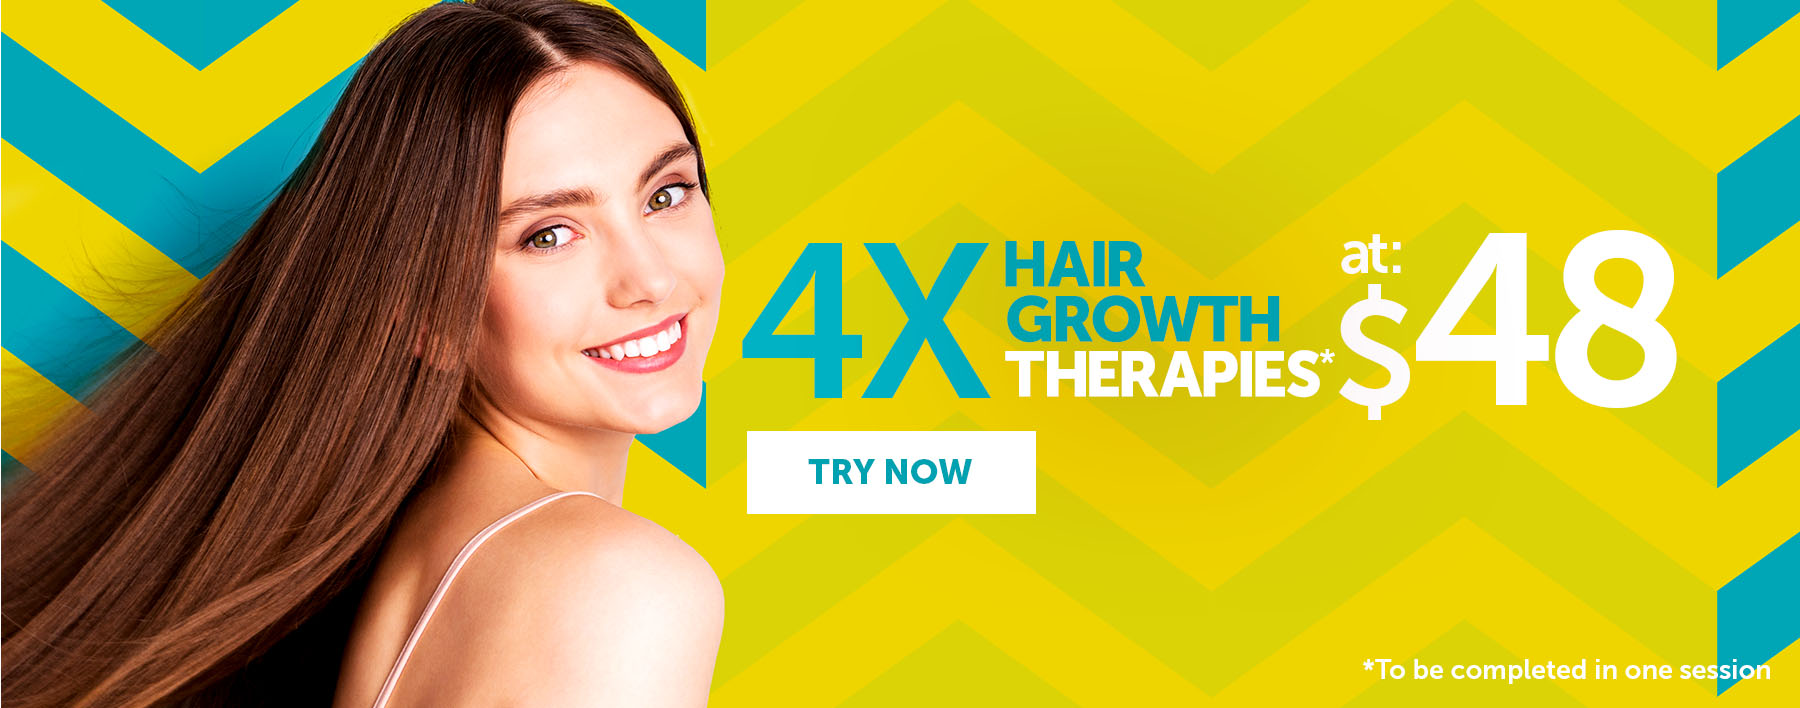 4 Hair Growth Therapies at $48